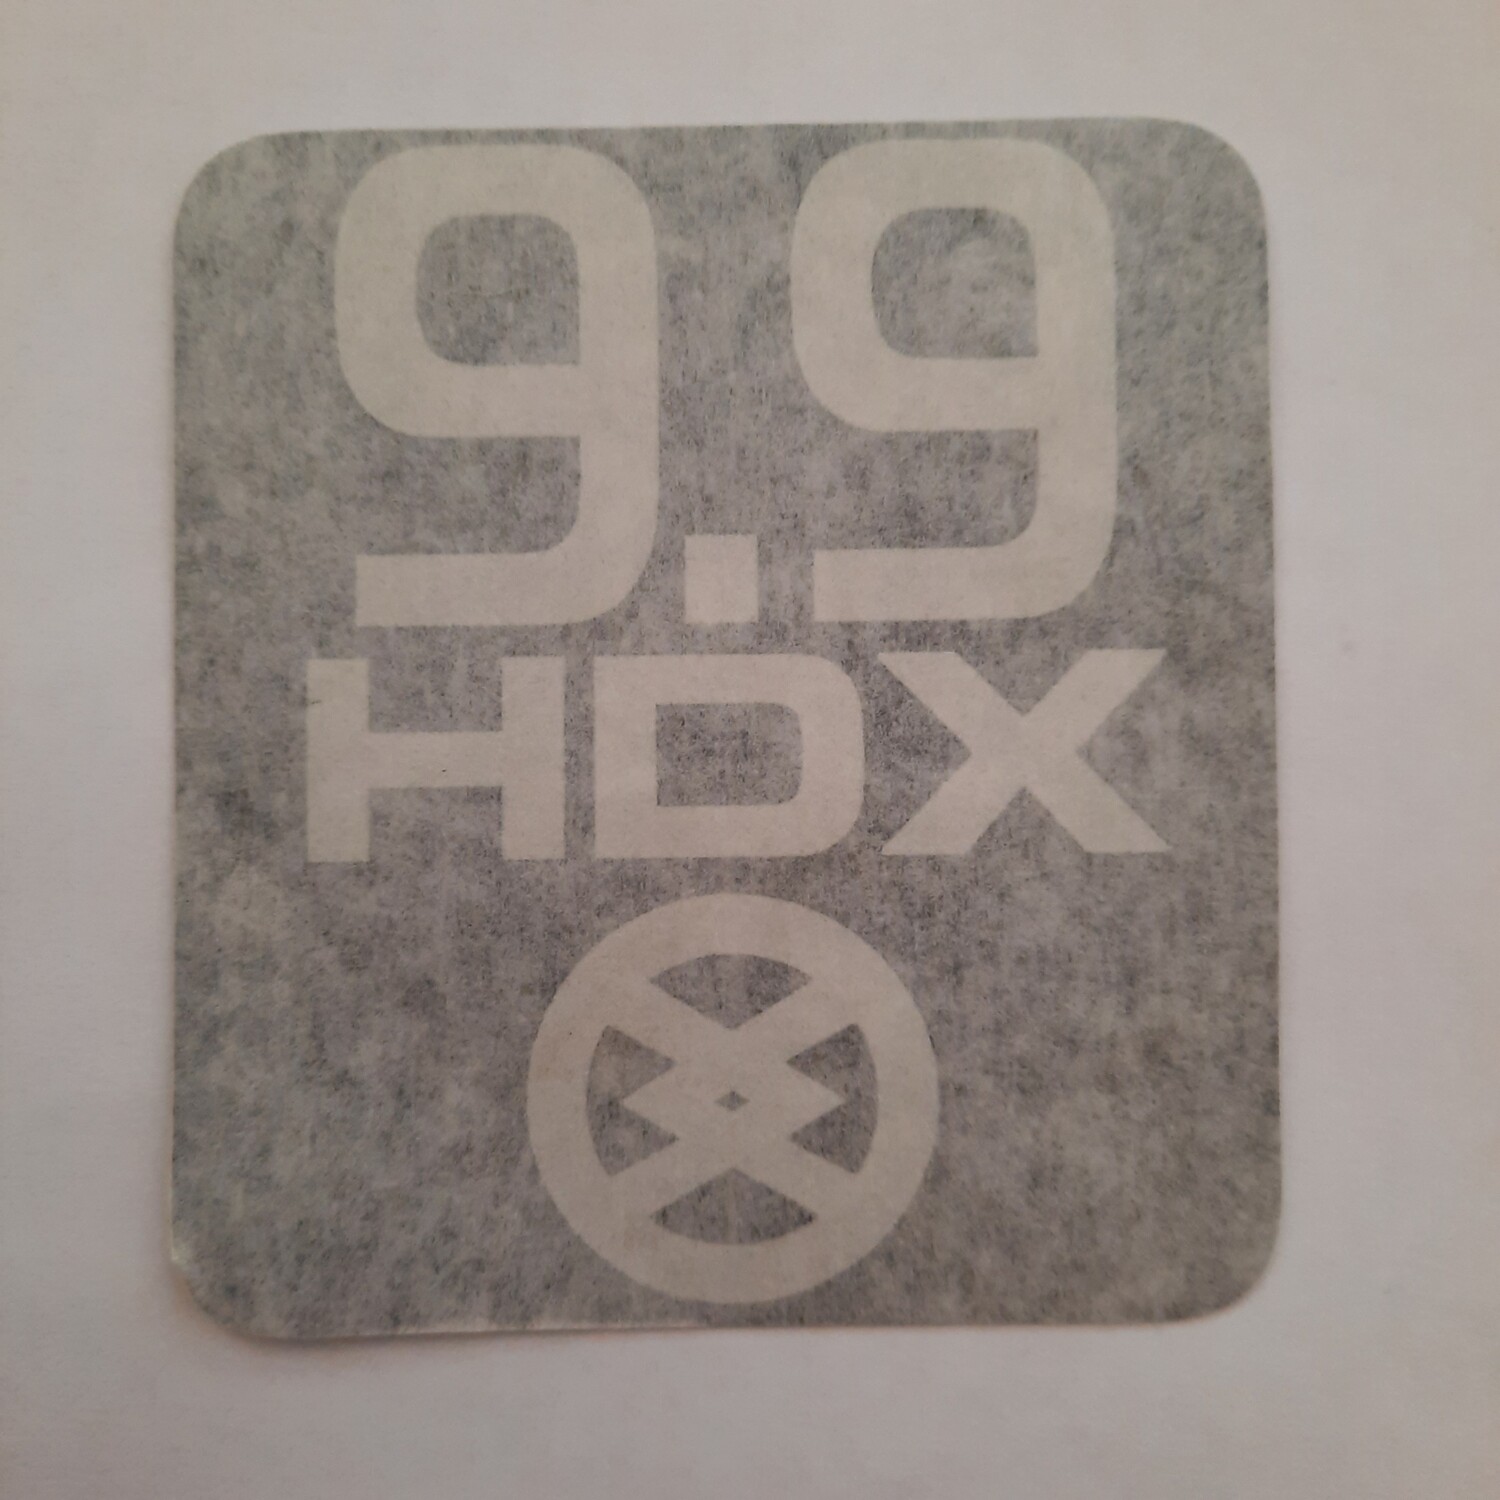 Наклейка на лодочный мотор HDX 9,9